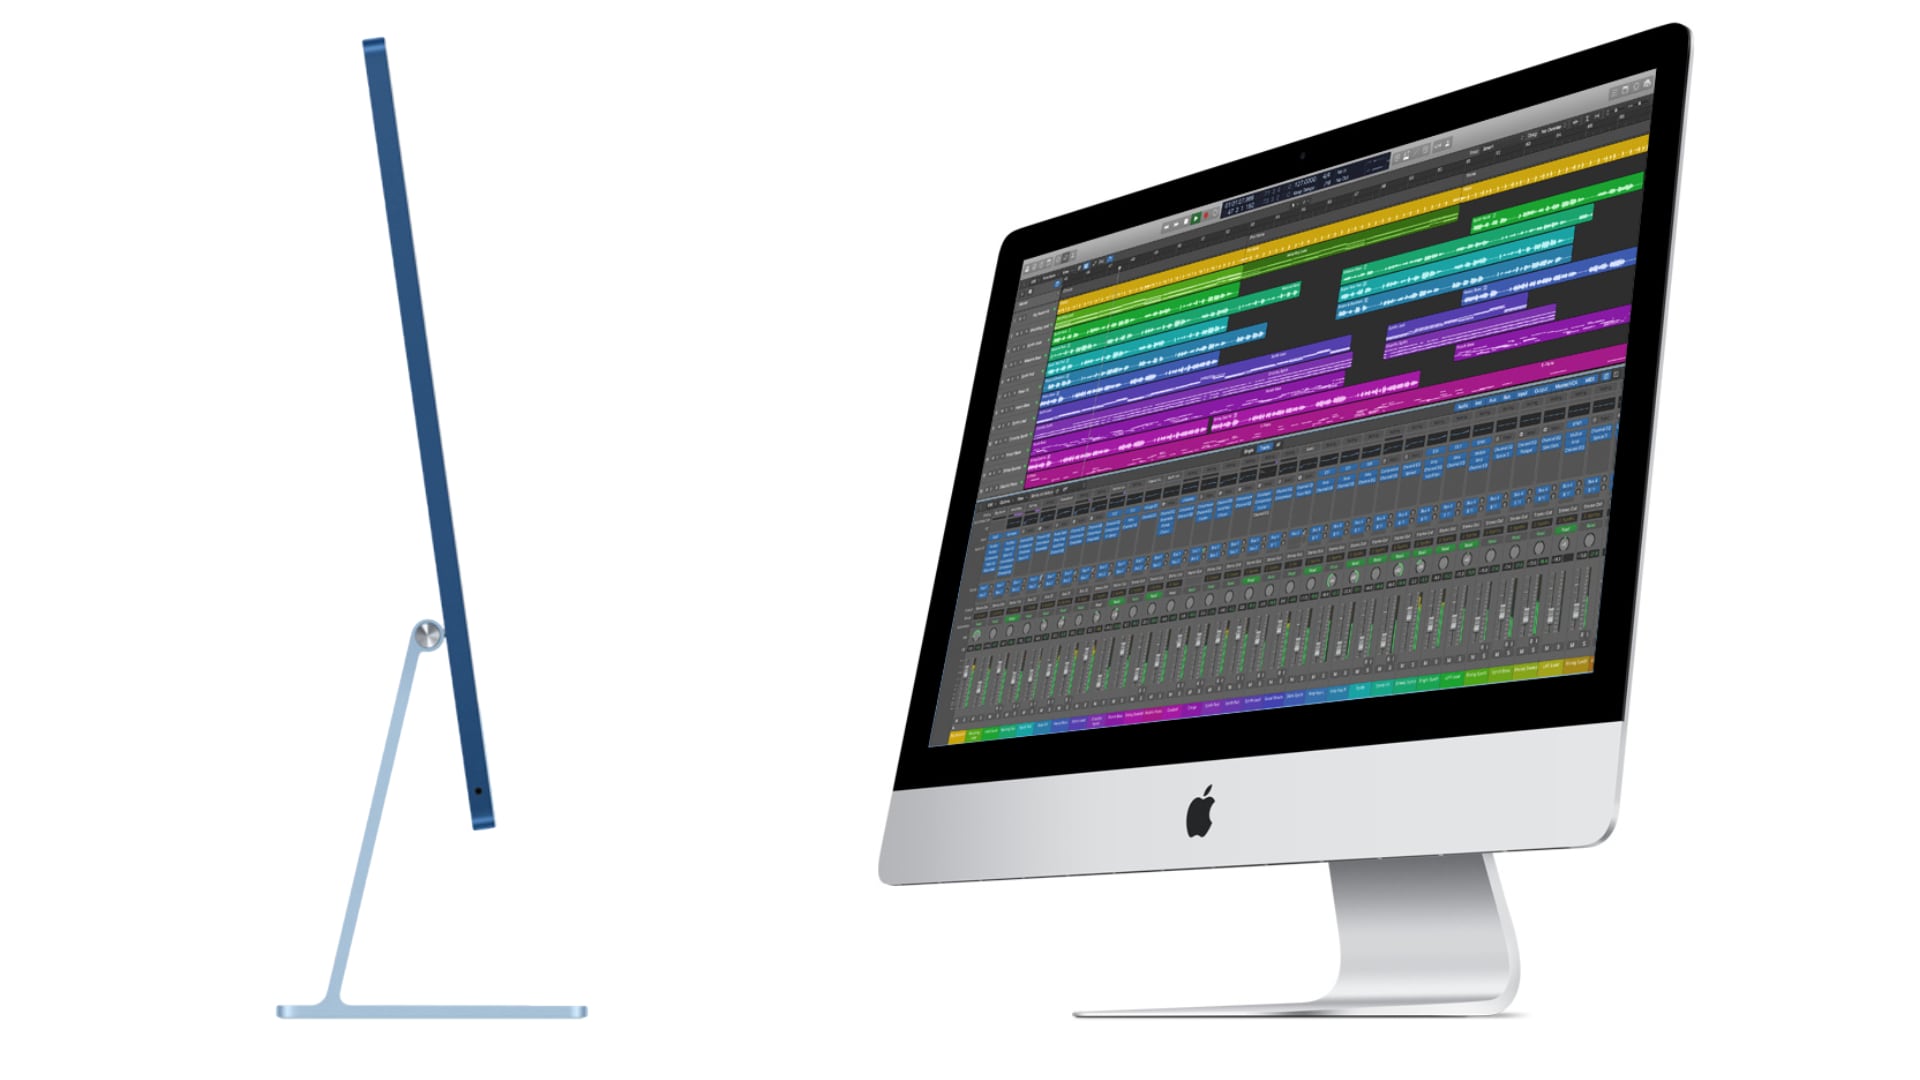 iMac 24" vs iMac 27"